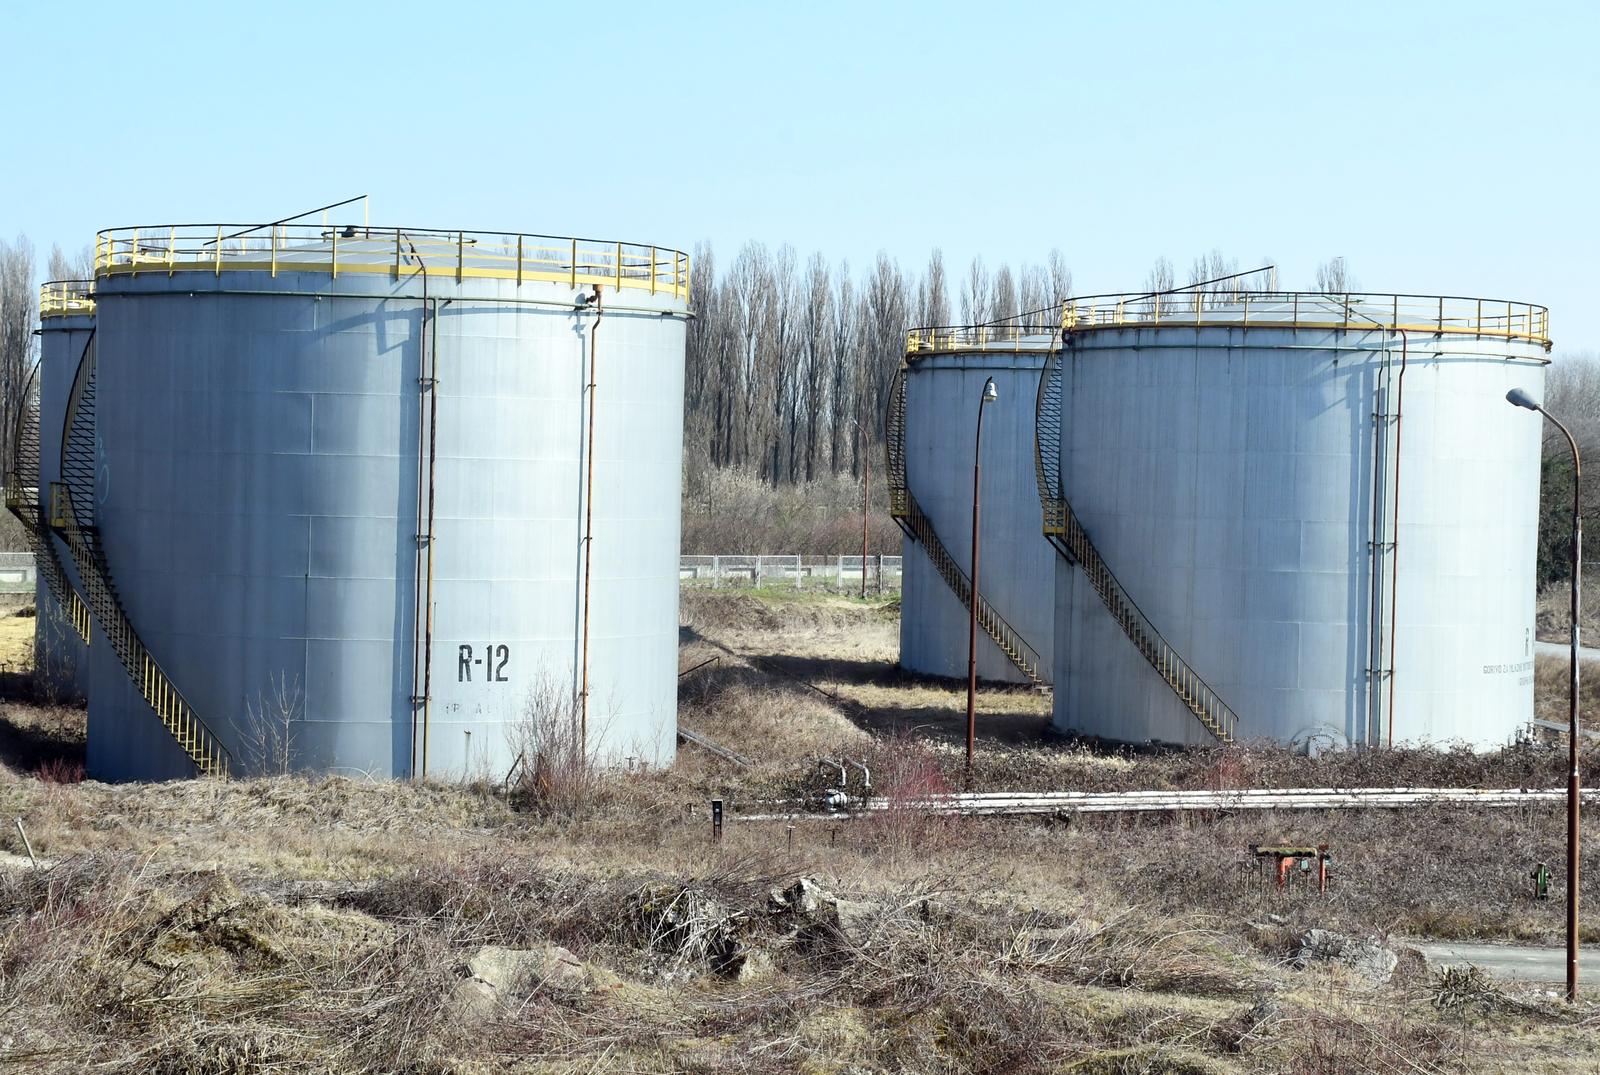 09.03.2022.,Sisak - Nekada su ovi rezervoari bili puni naftnih derivata proizvedenih u sisackoj Rafineriji.
 Photo: Nikola Cutuk/PIXSELL